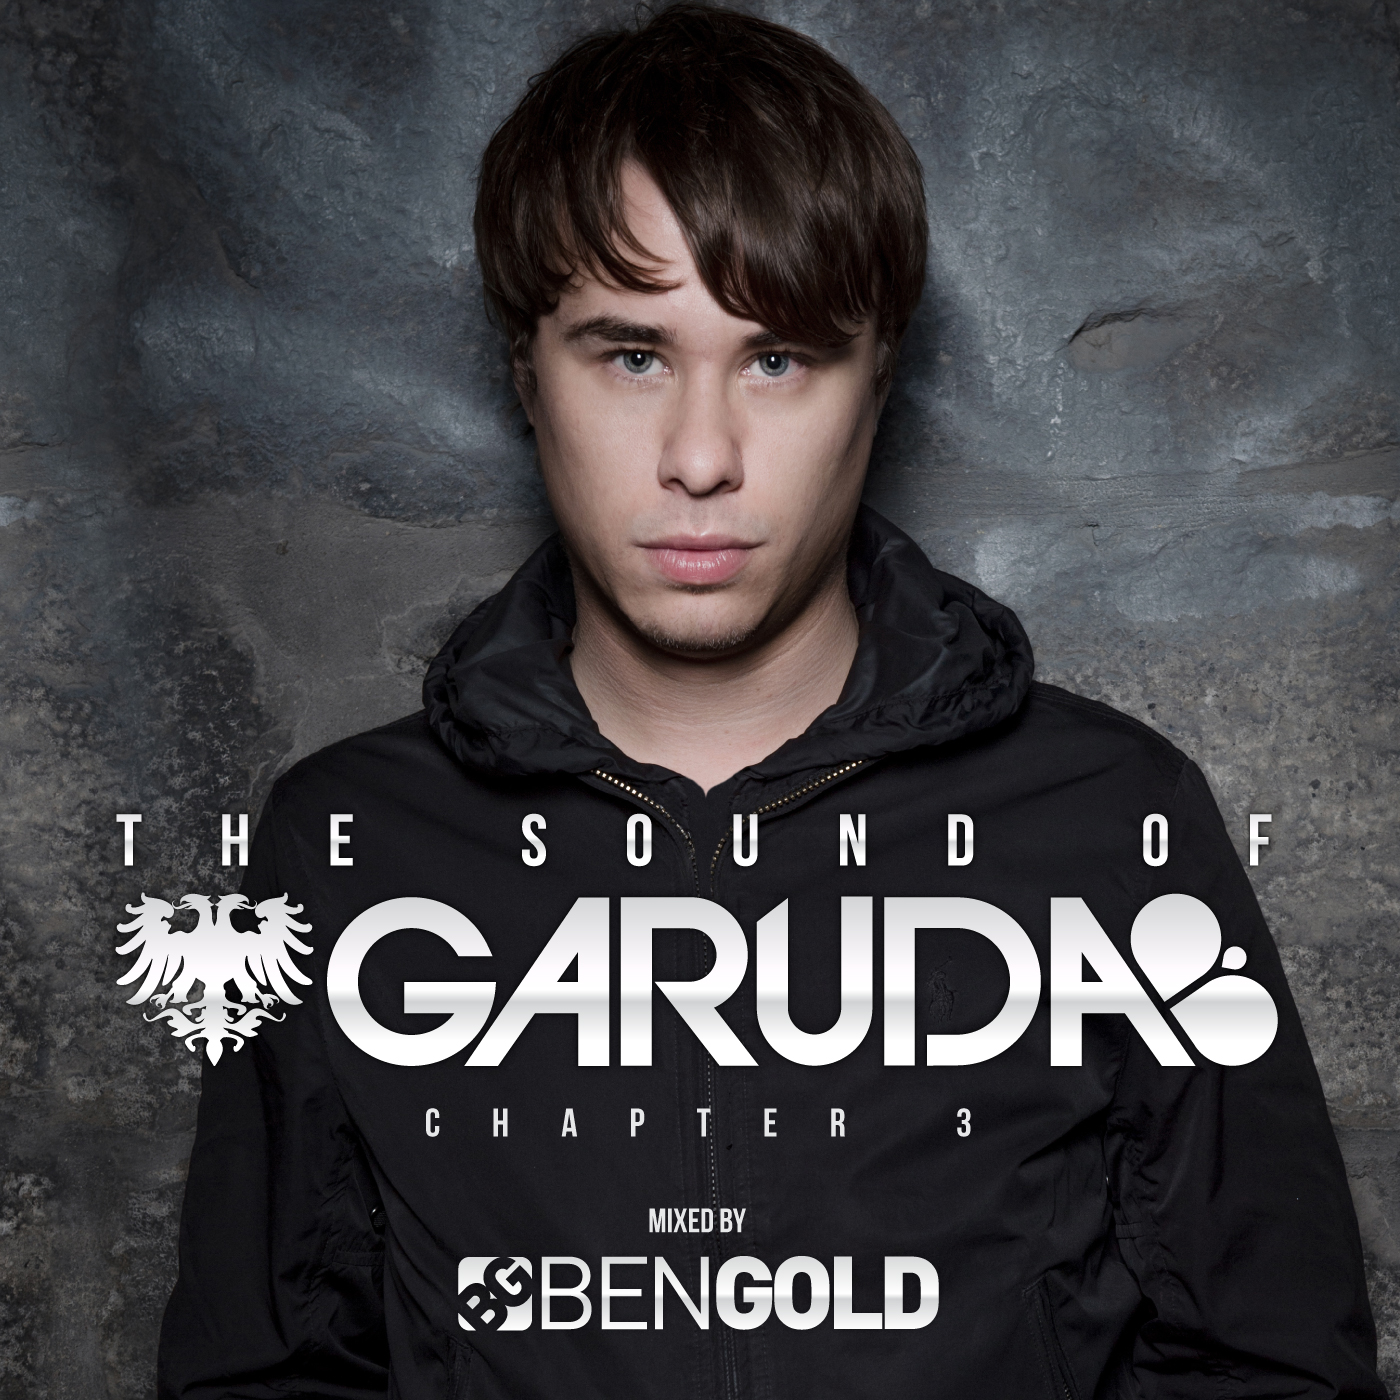 Ben gold. Luke Bond DJ. "Ben Gold" & "the Glass child" mp3. Eximinds DJ. 10-4ben Gold.